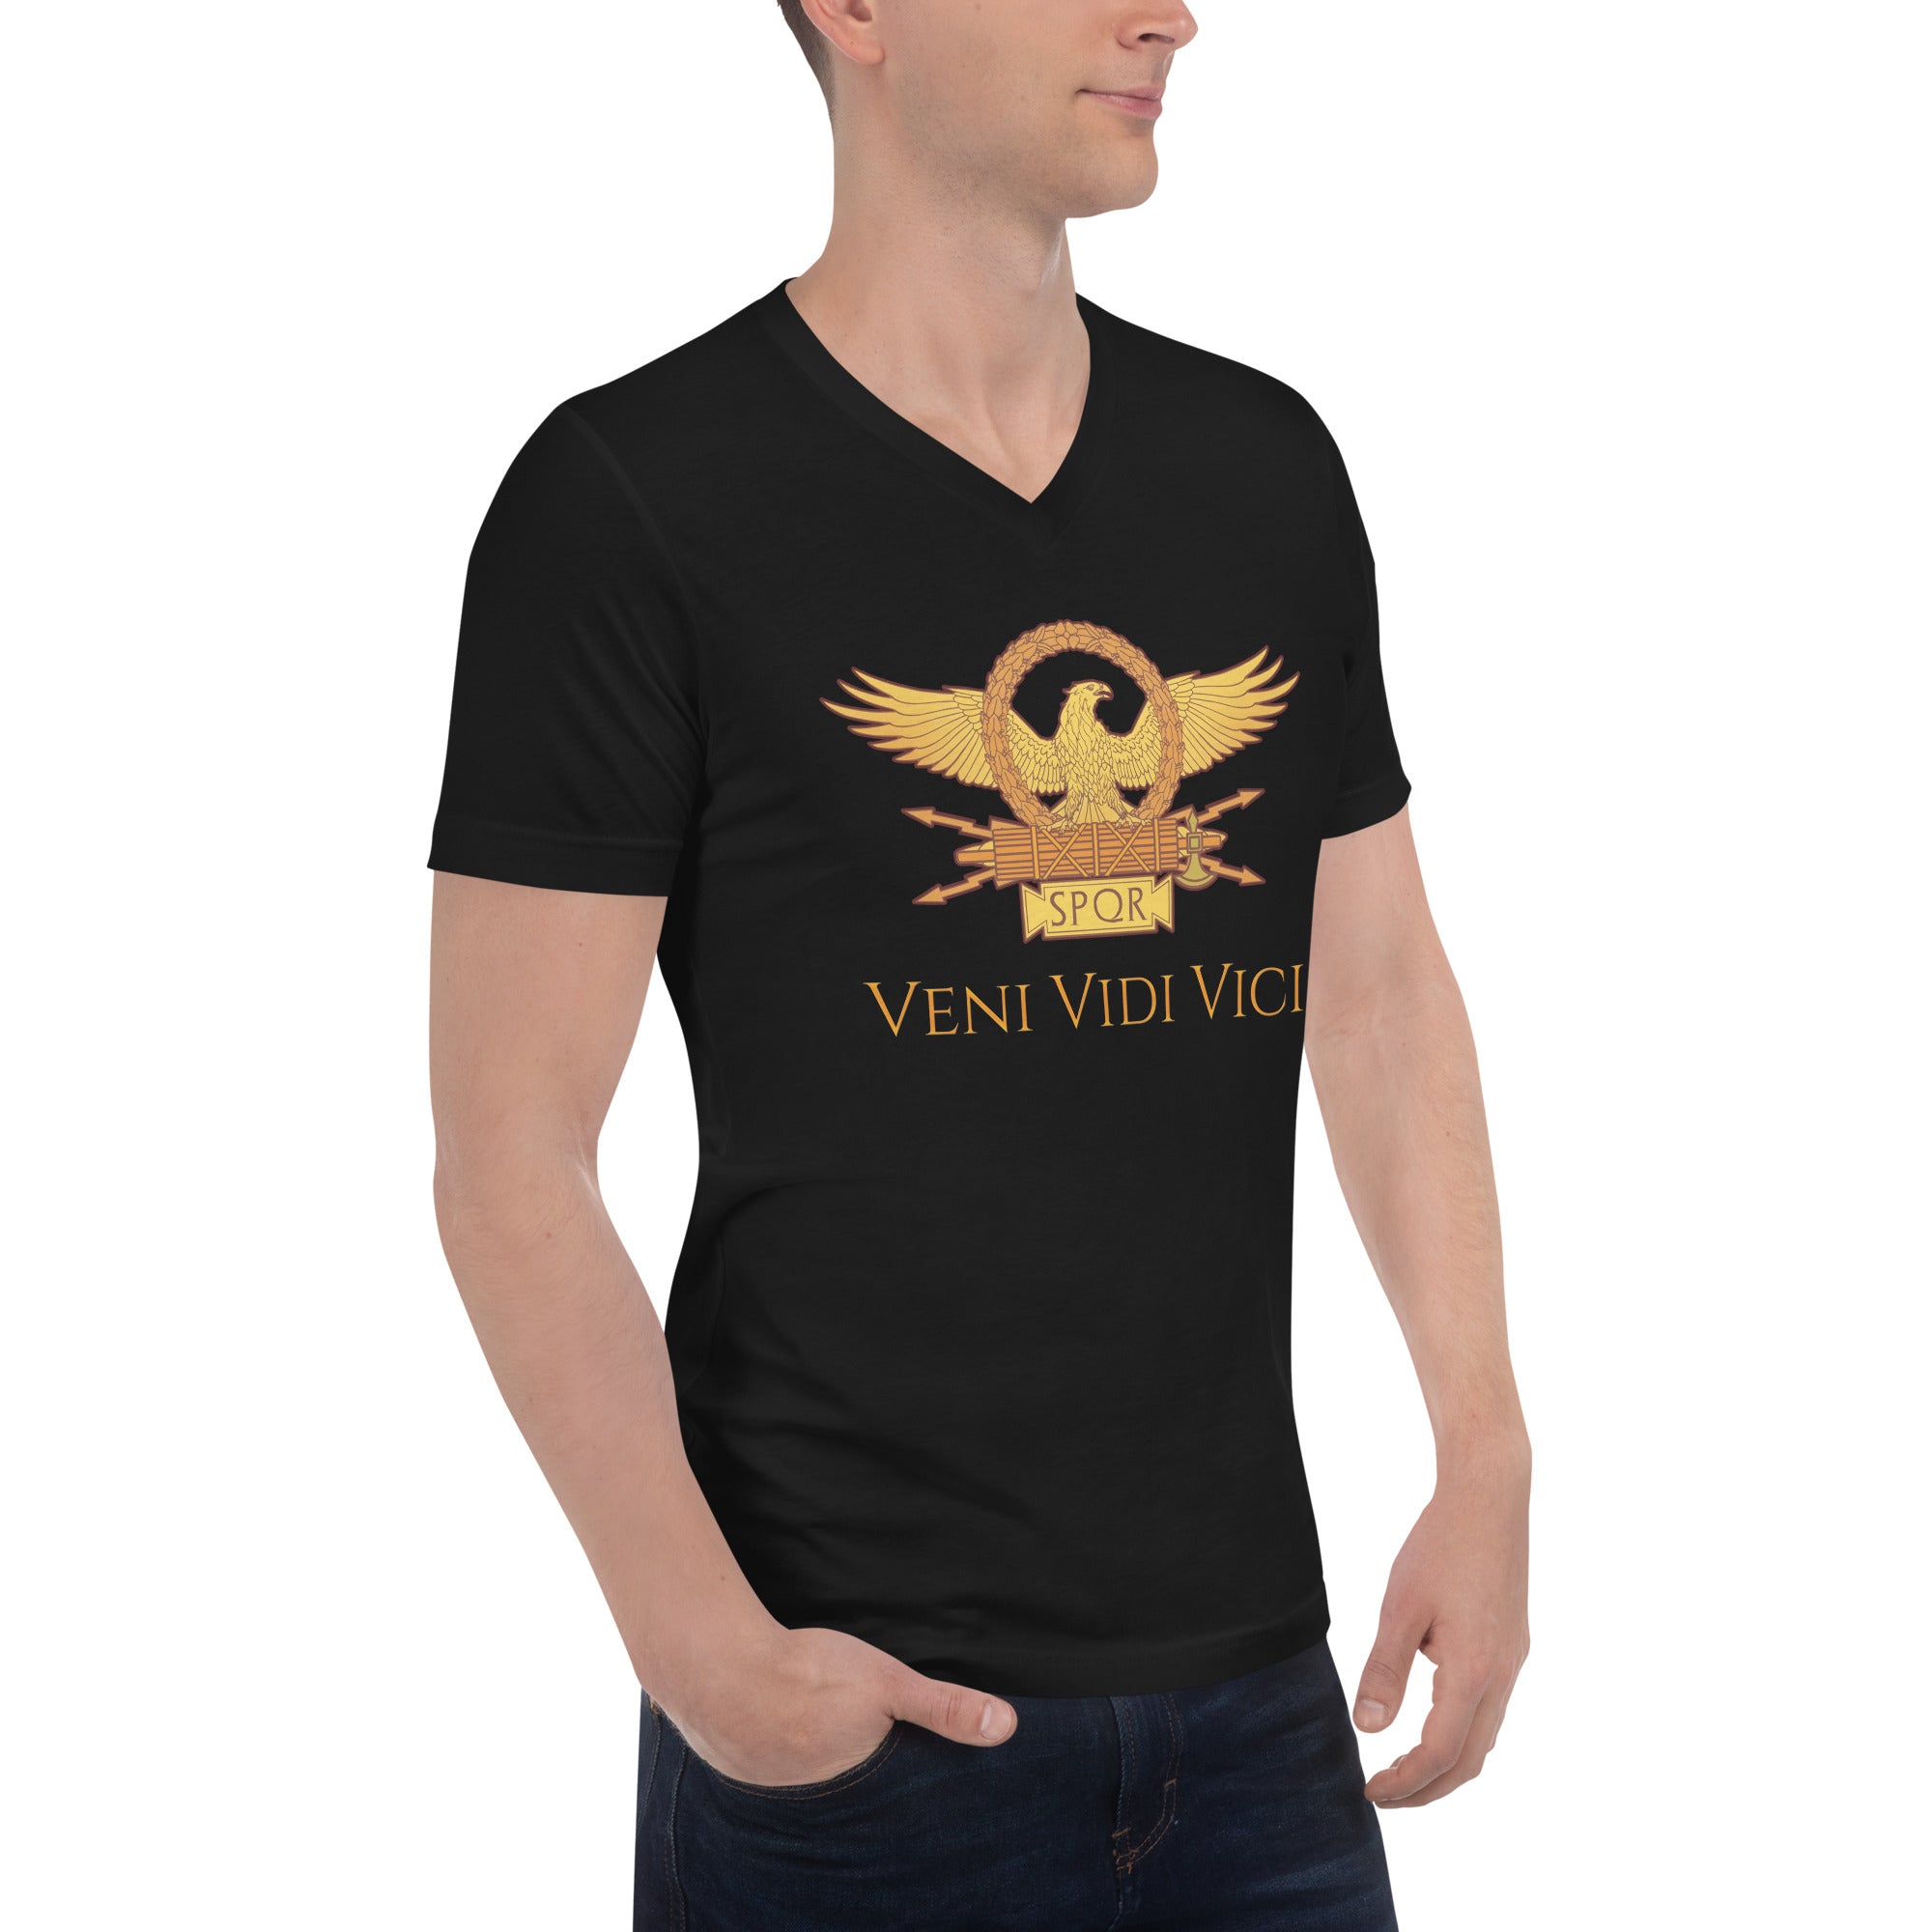 Veni Vidi Vici - Julius Caesar - Ancient Rome - Unisex Short Sleeve V-Neck T-Shirt